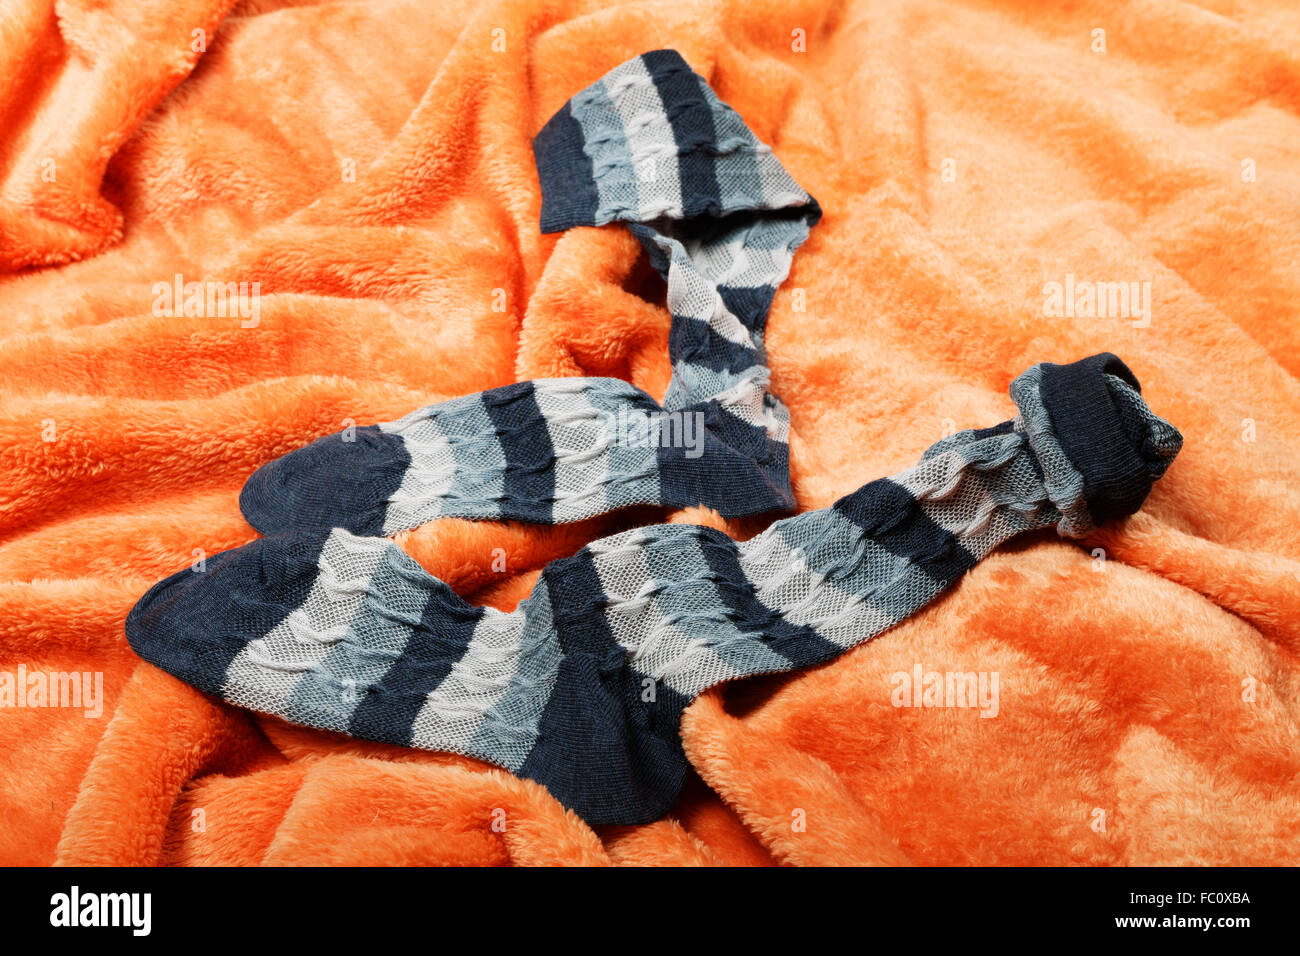 Calcetines hembra en una manta naranja Foto de stock